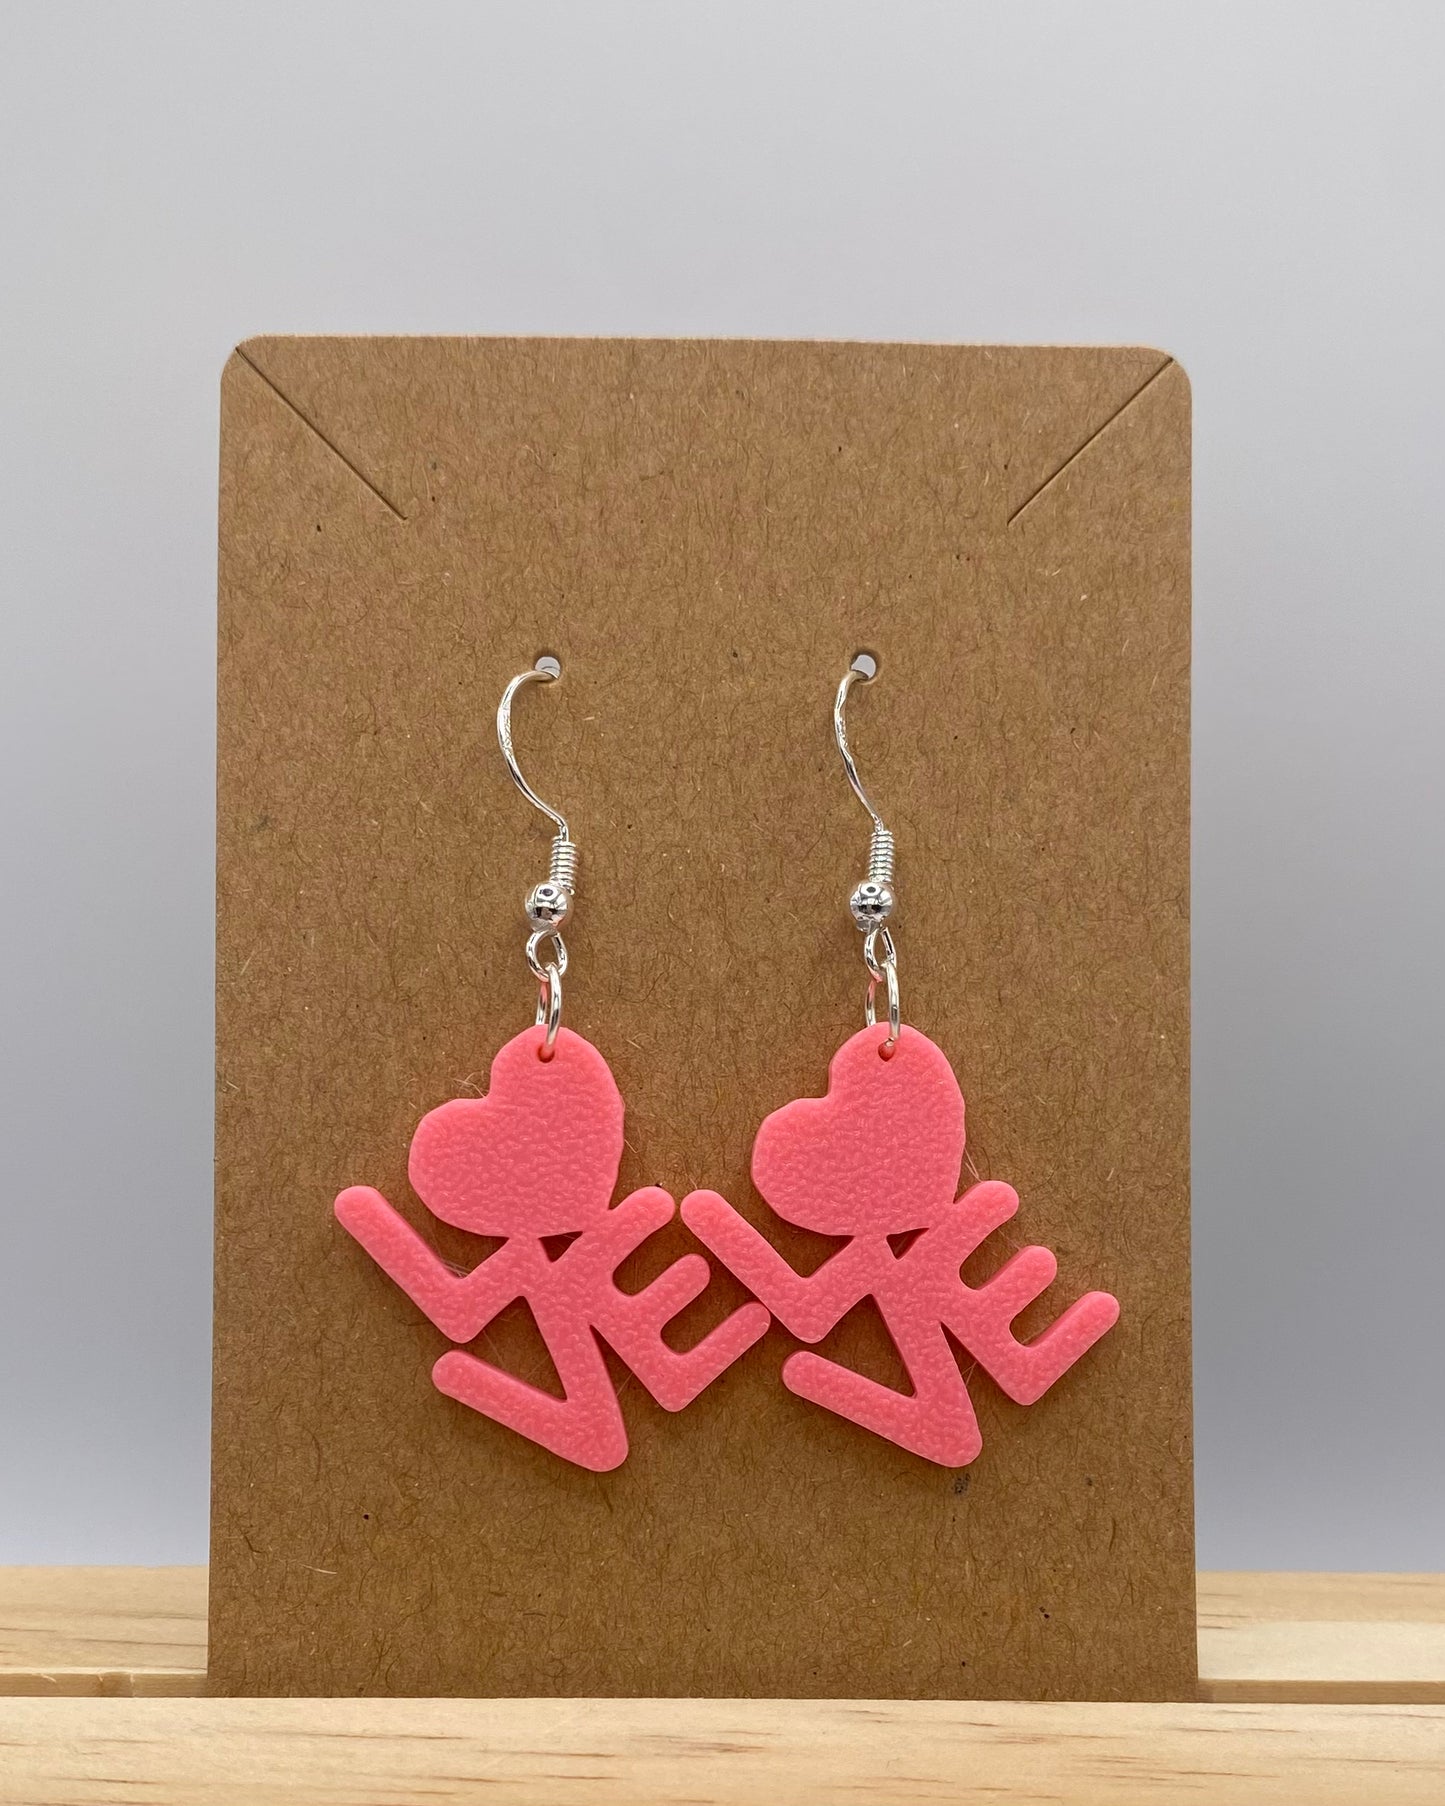 Heart Earrings - 058 in pink